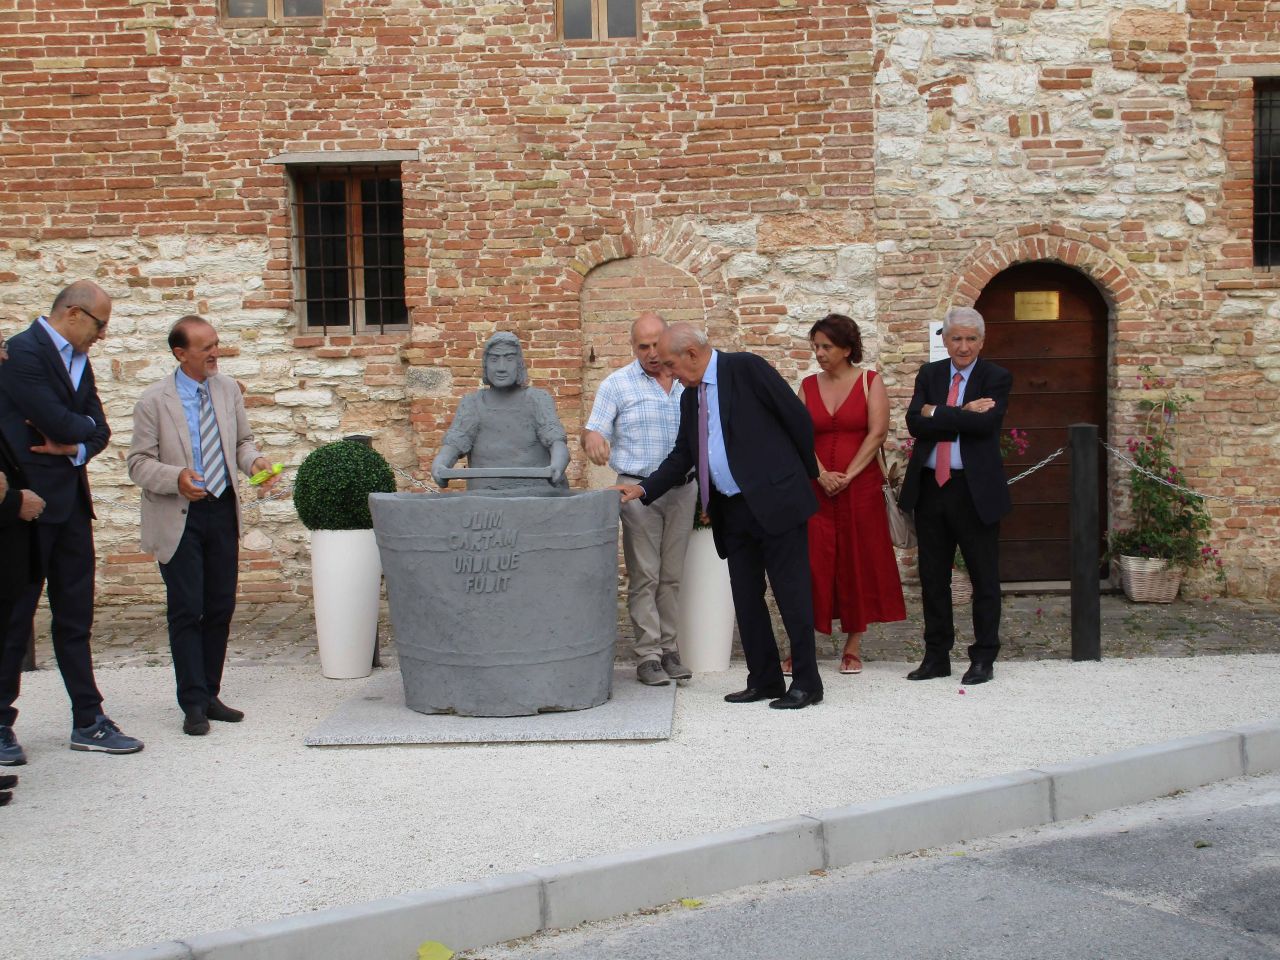 Inauguration of vatman sculpture (Festa dei Cartai - Chiesa di S. Maria Maddalena, 22/07/2015, Fabriano)